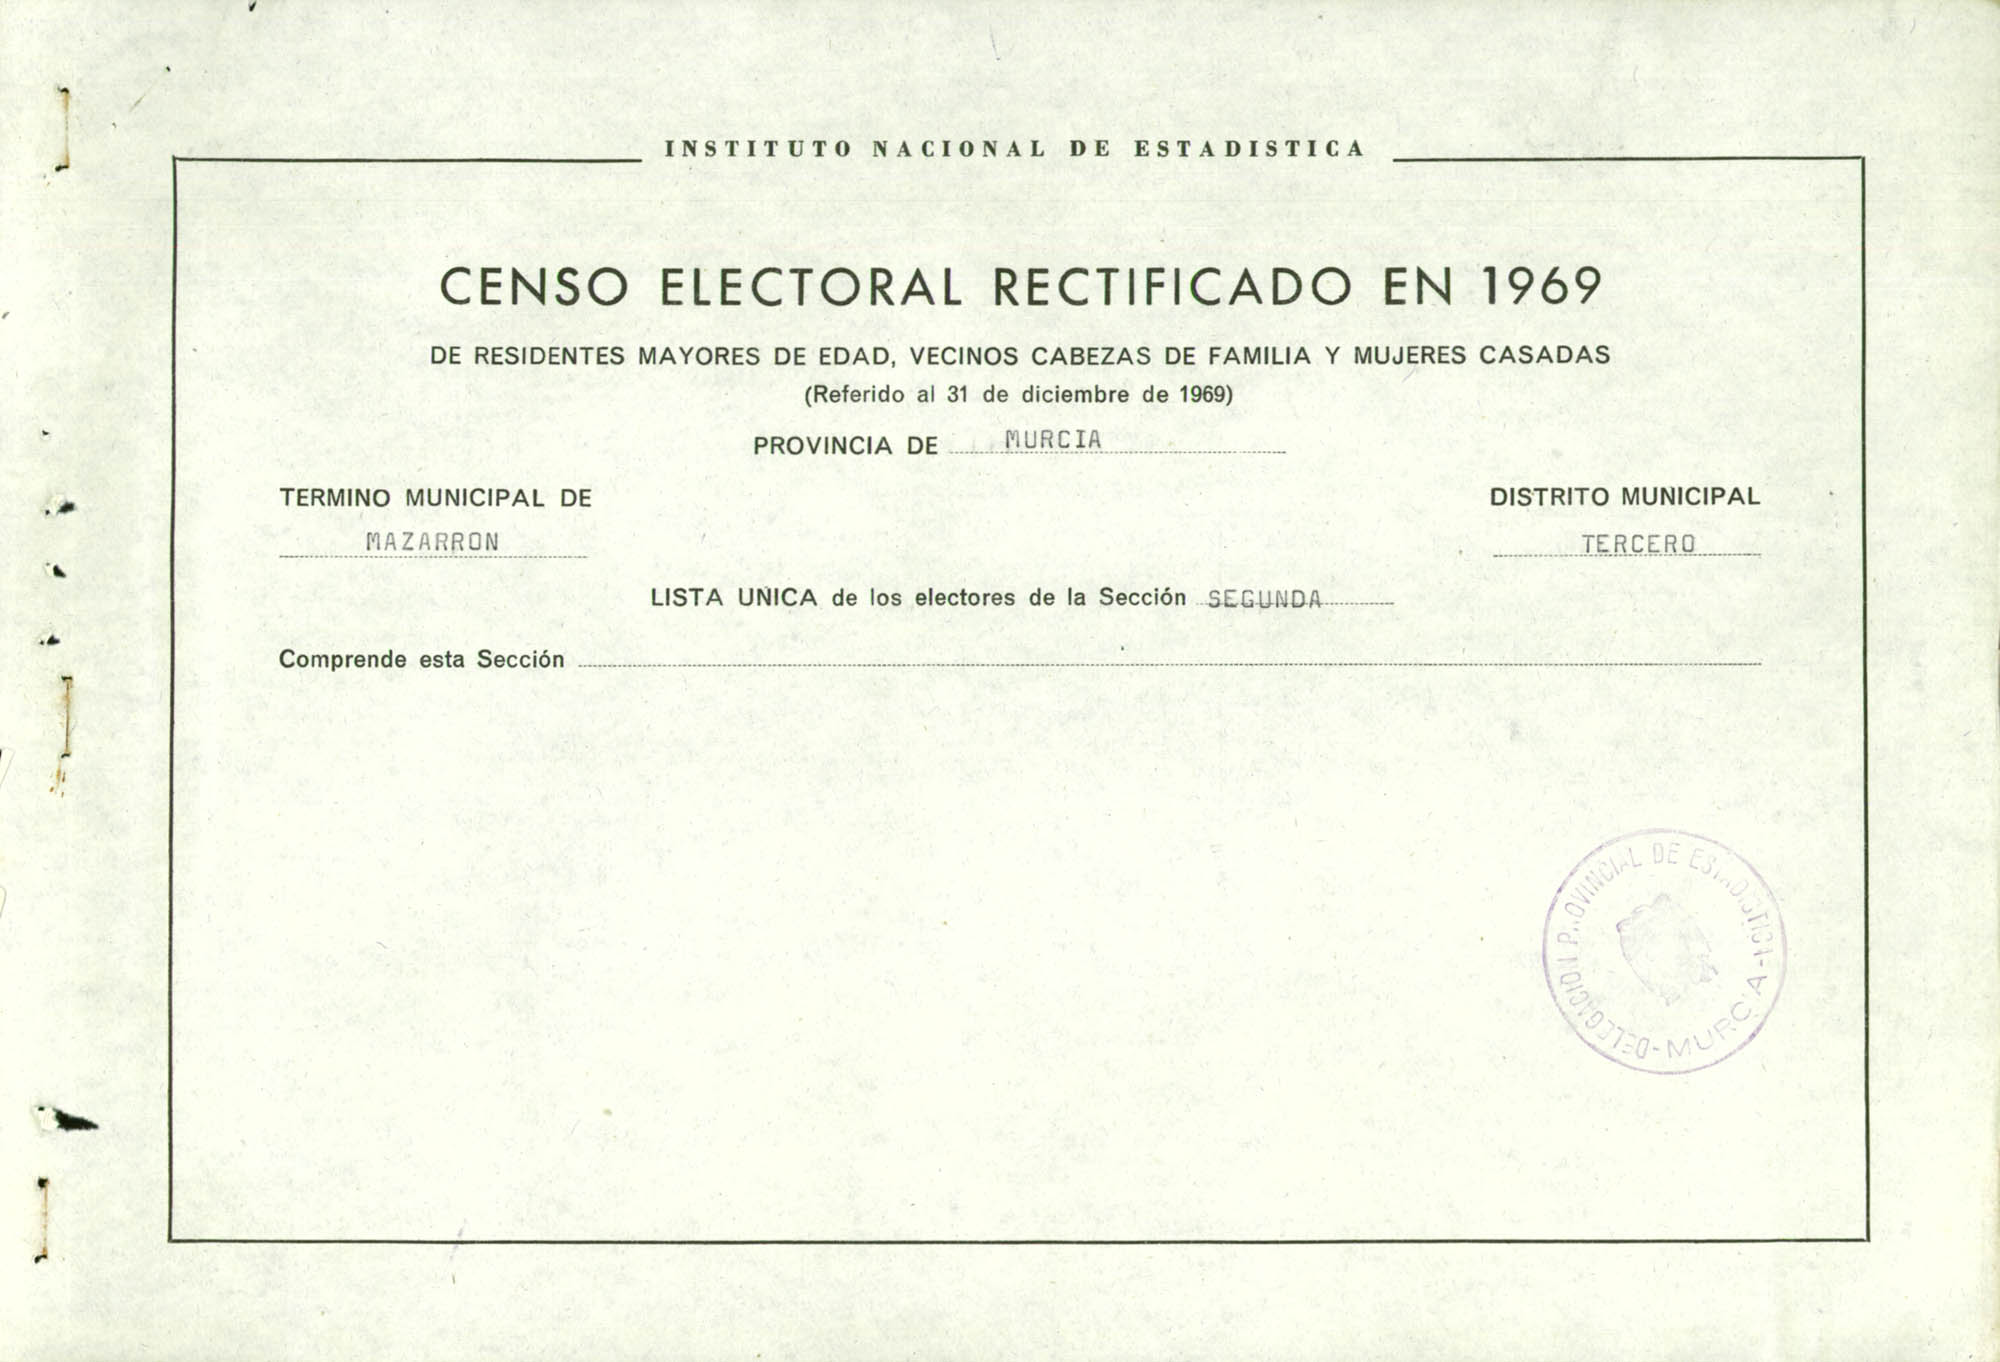 Censo electoral rectificado en 1969: listas definitivas de Mazarrón, Distrito 3º, sección 2ª.